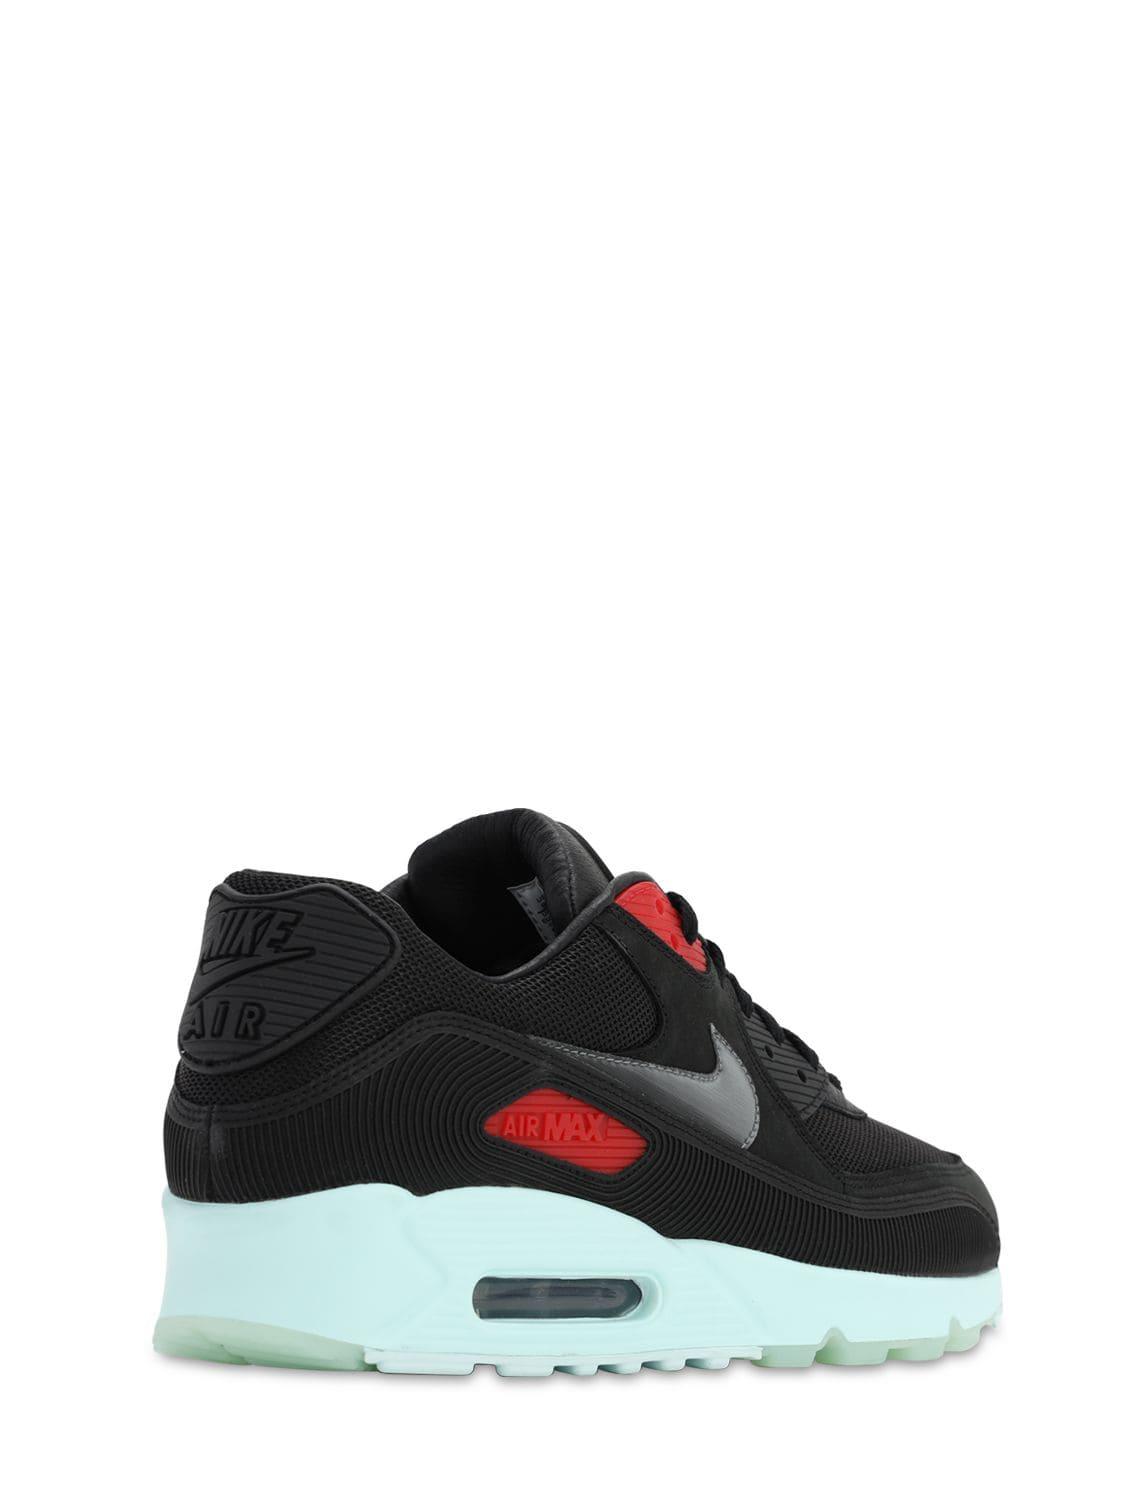 Nike Air Max 90 Gel Pack Sneakers in Black for Men - Lyst